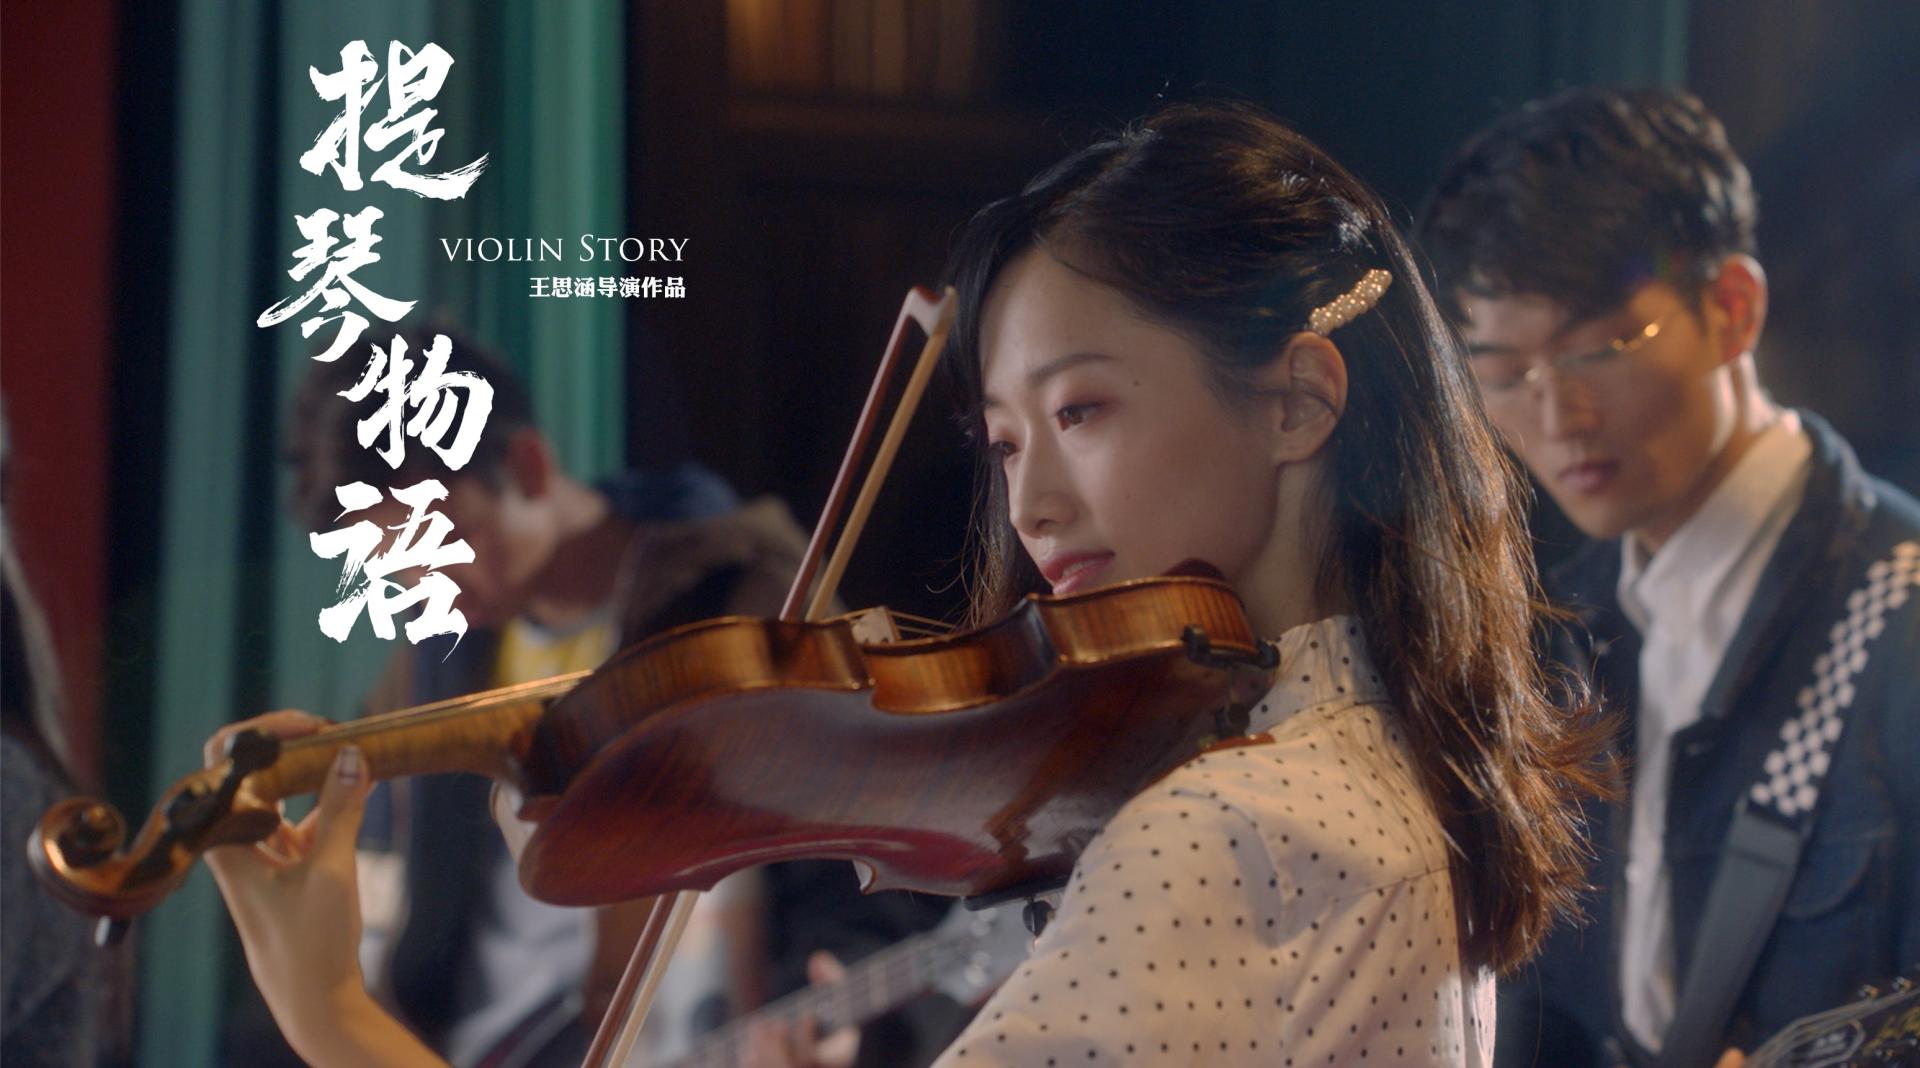 【微电影】北京大学一二九合唱活动宣传片《提琴物语》